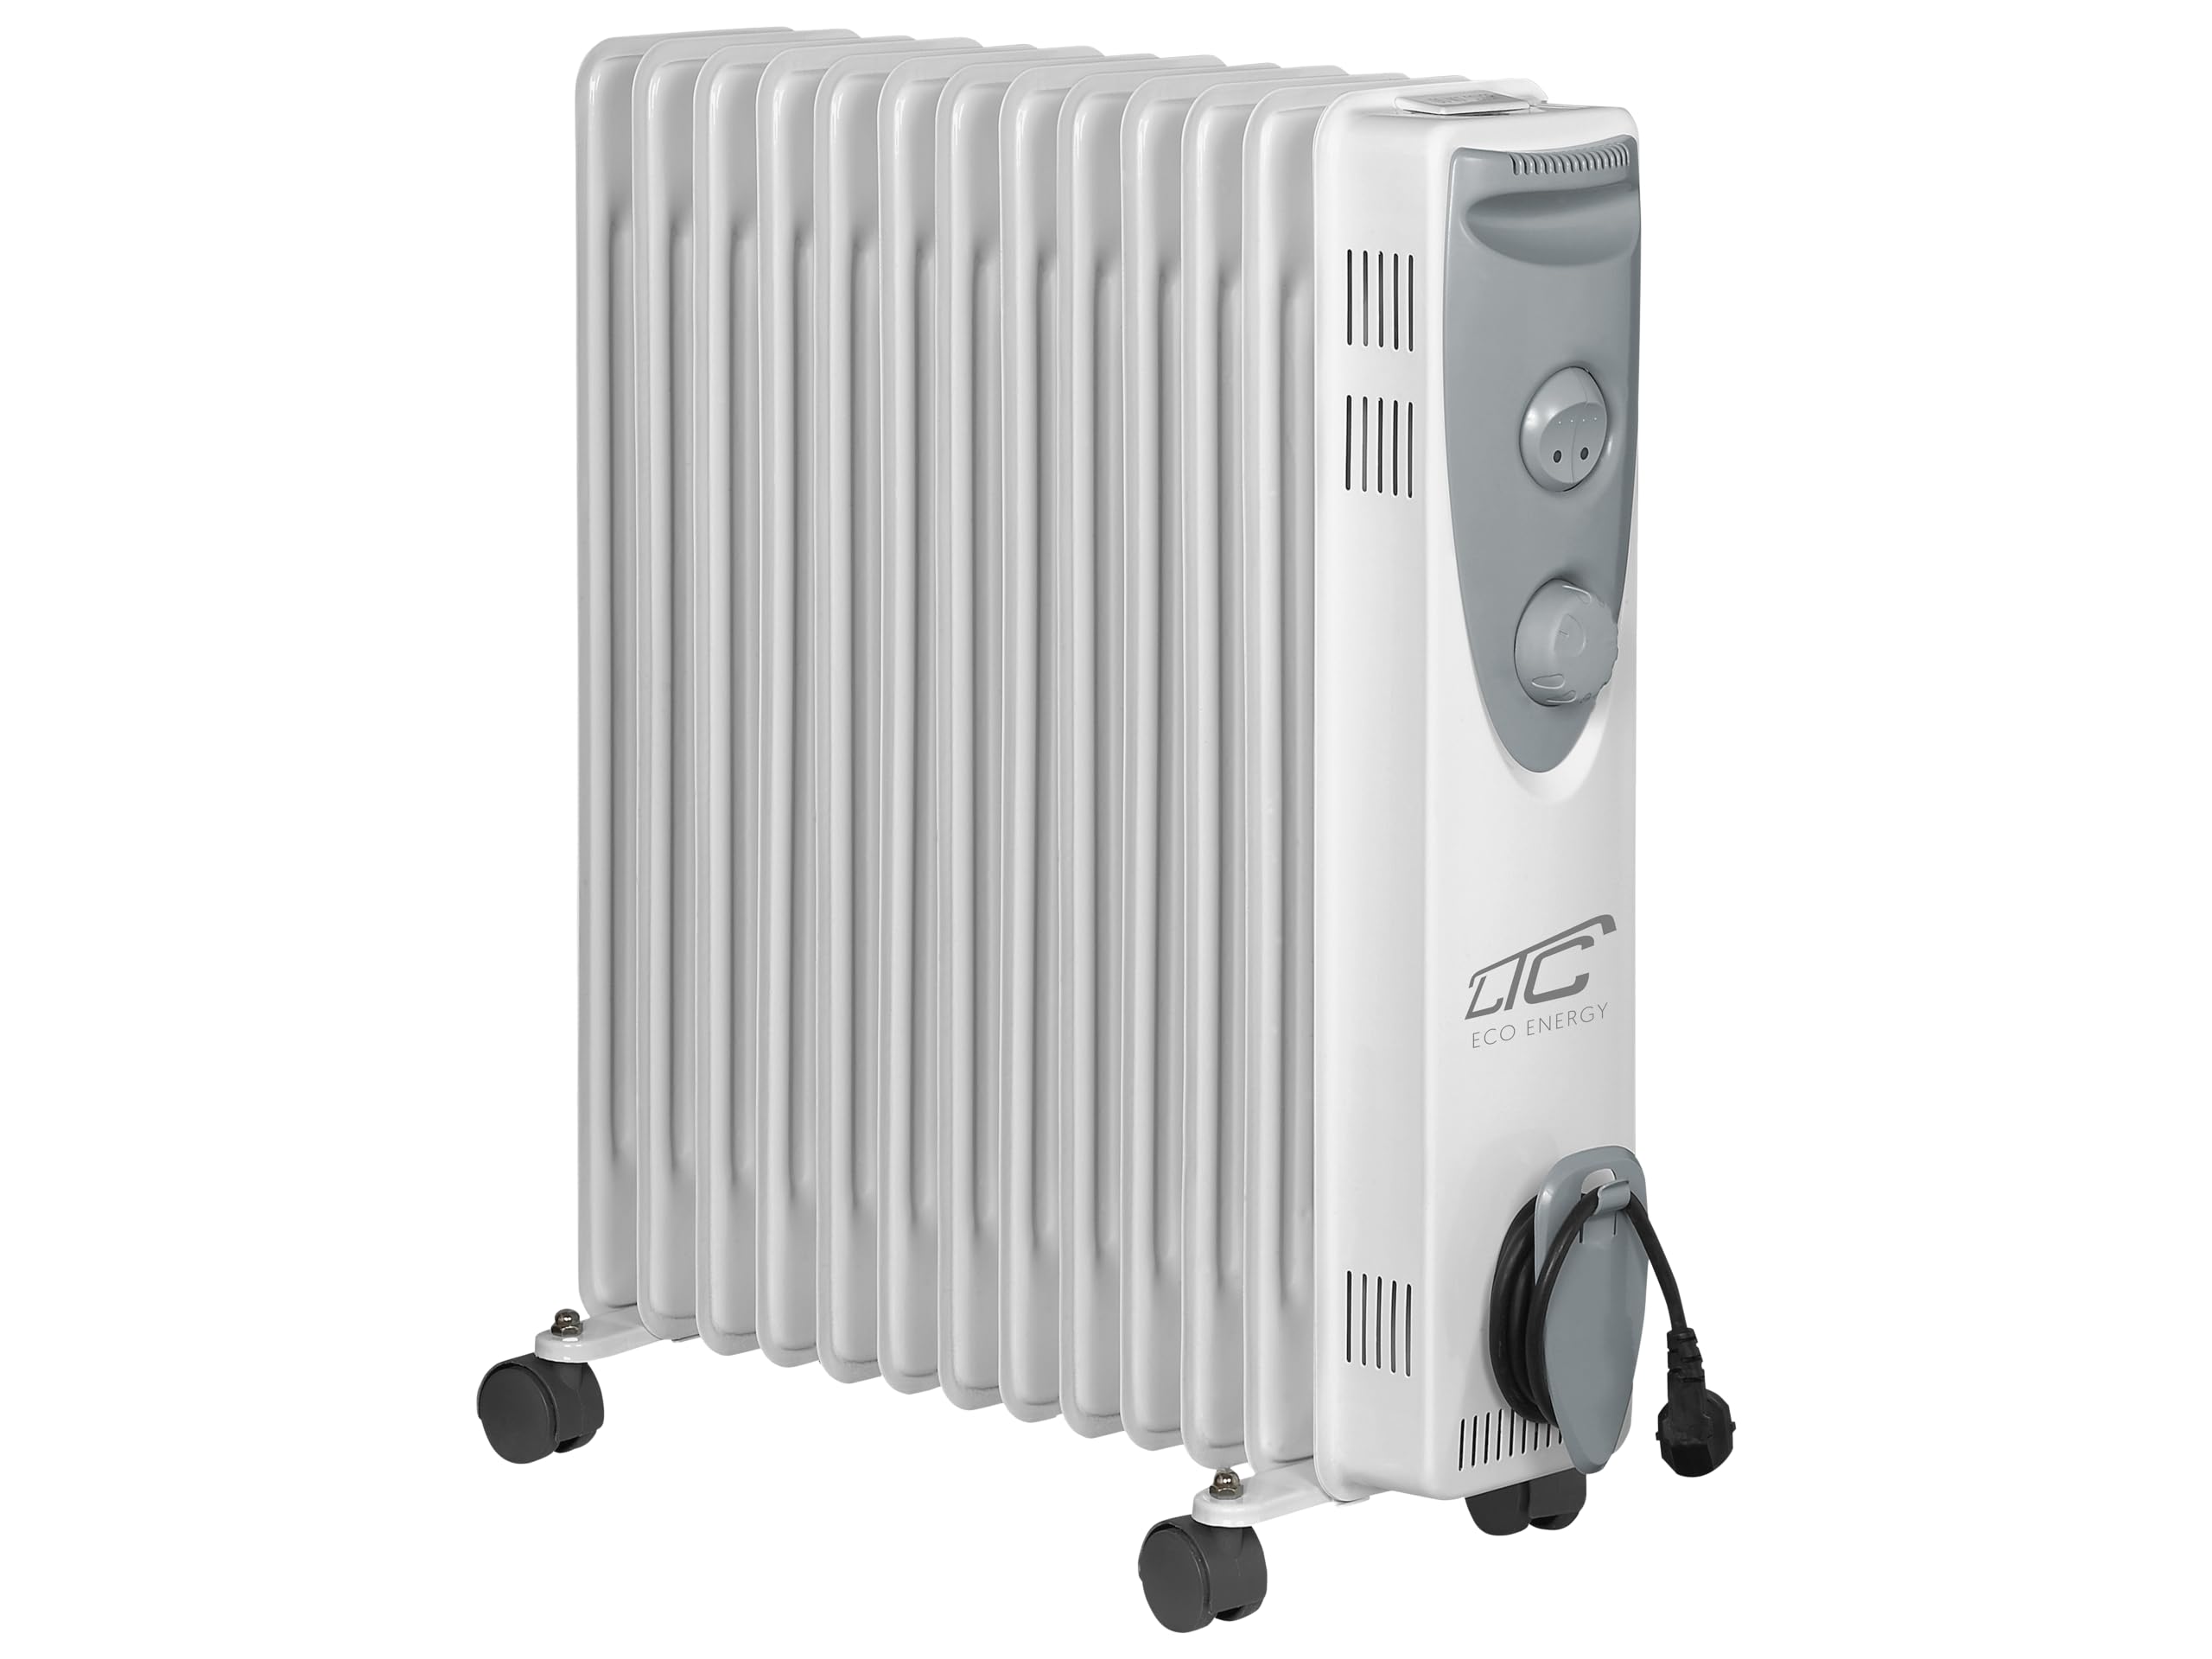 LTC - UG13 - Elektrischer Ölradiator - Heizkörper - mit 13 Rippen - mit Thermostat - Max. 2500 W - Elektro Konvektorheizung - mit Überhitzungsschutz und Rollen - für Innenräume - Tragbar - Grau